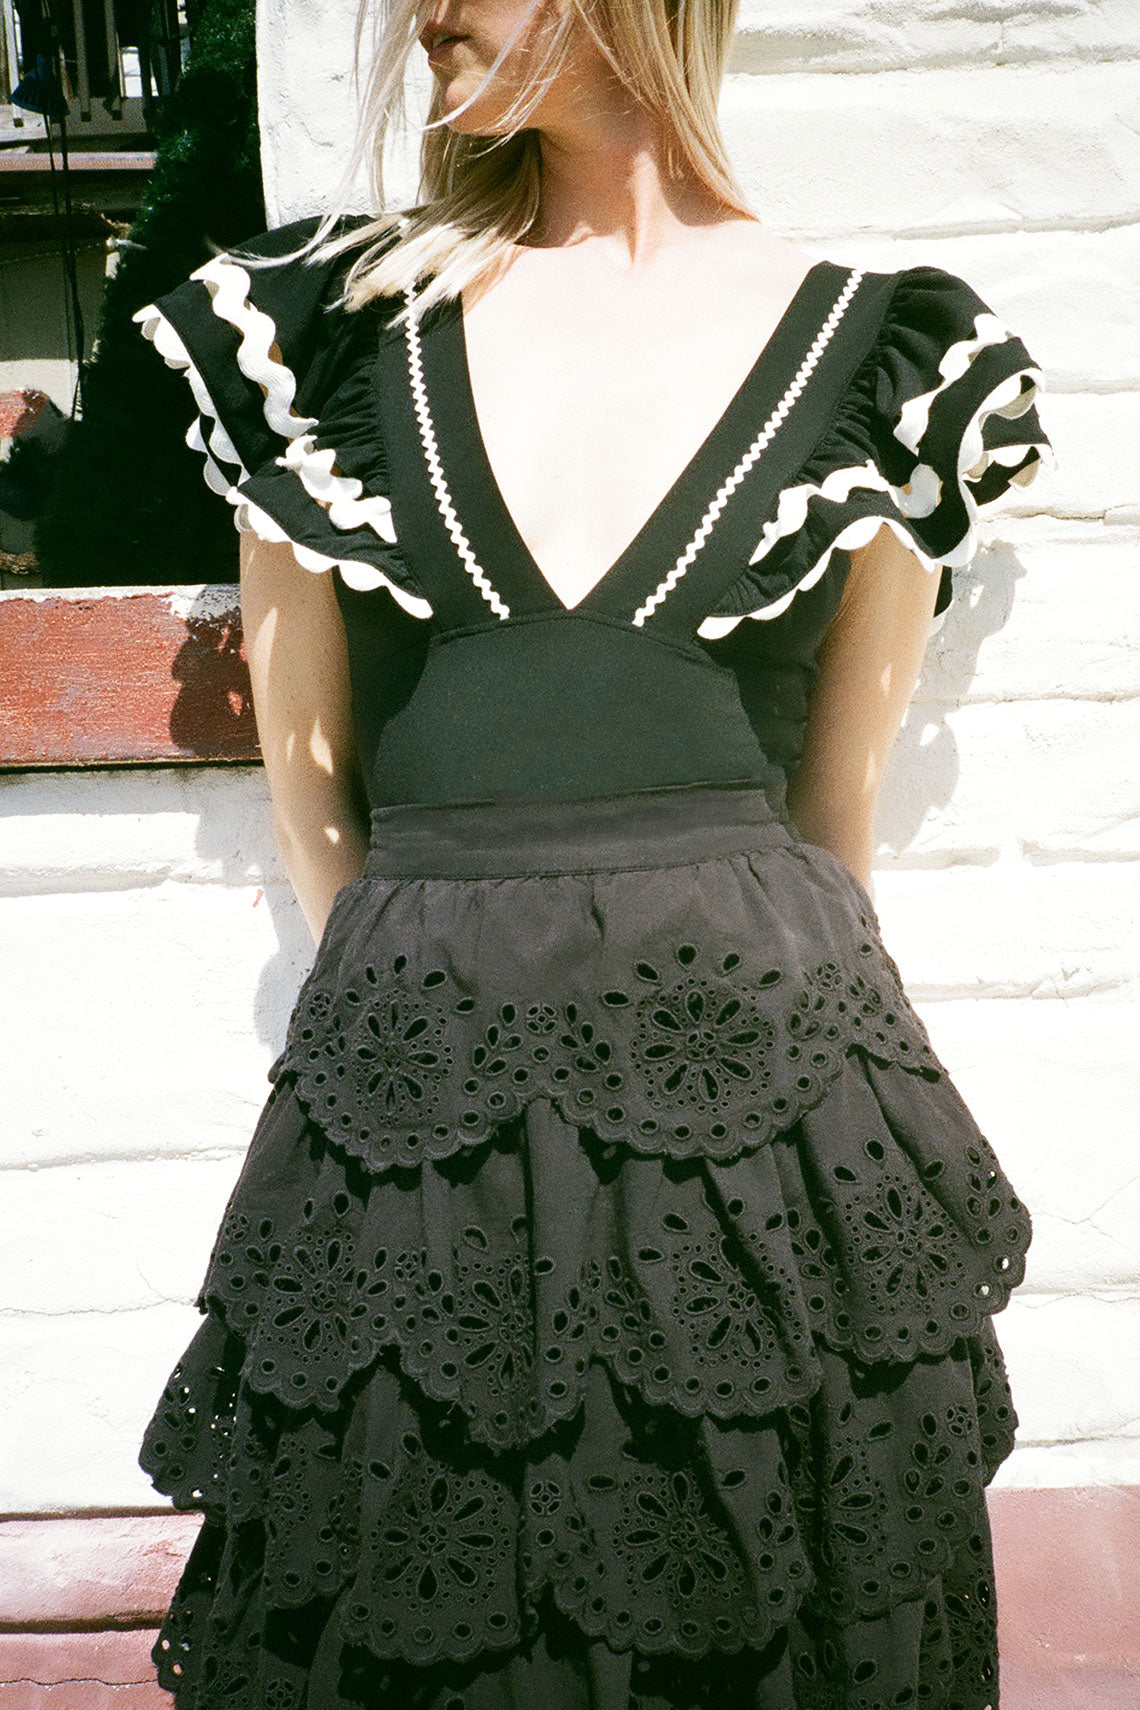 Black Tiered Tali Skirt